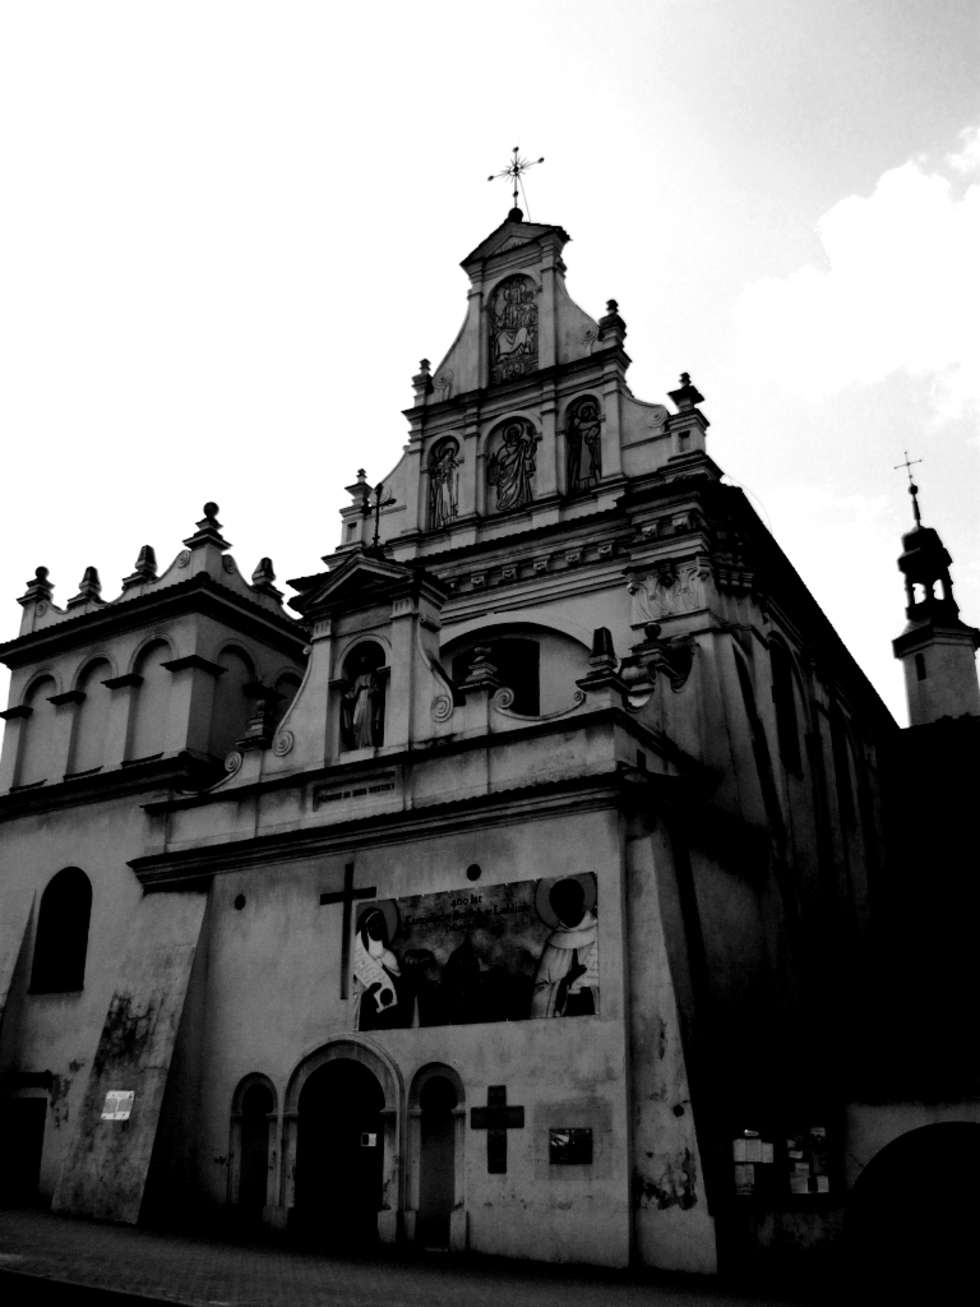  Fasada kościoła Karmelitów Bosych w Lublinie